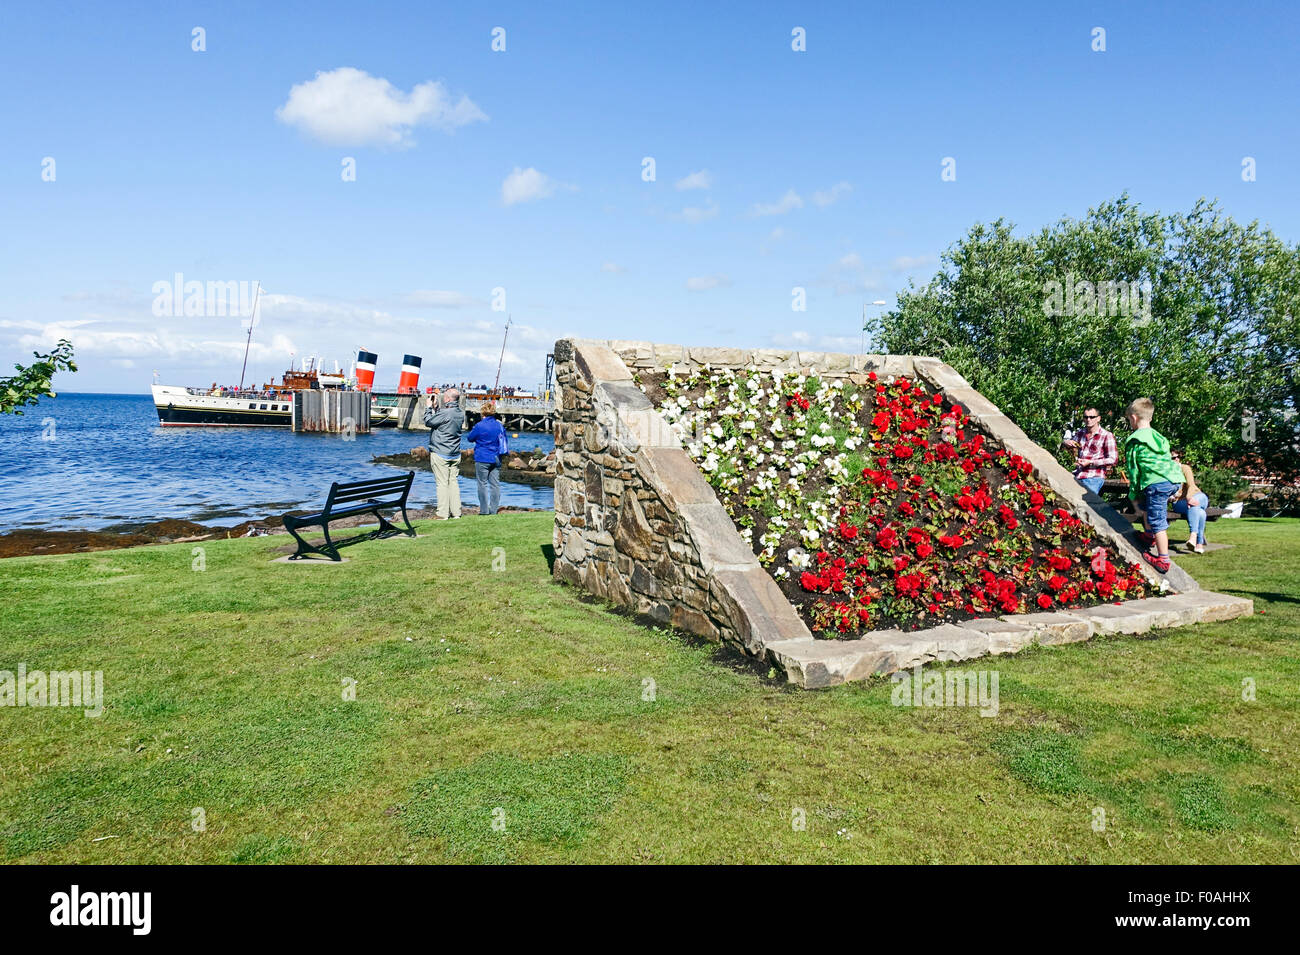 Le front de mer en Ecosse Arran Brodick avec lit de fleur et Waverley vapeur à aubes à l'embarcadère. Banque D'Images